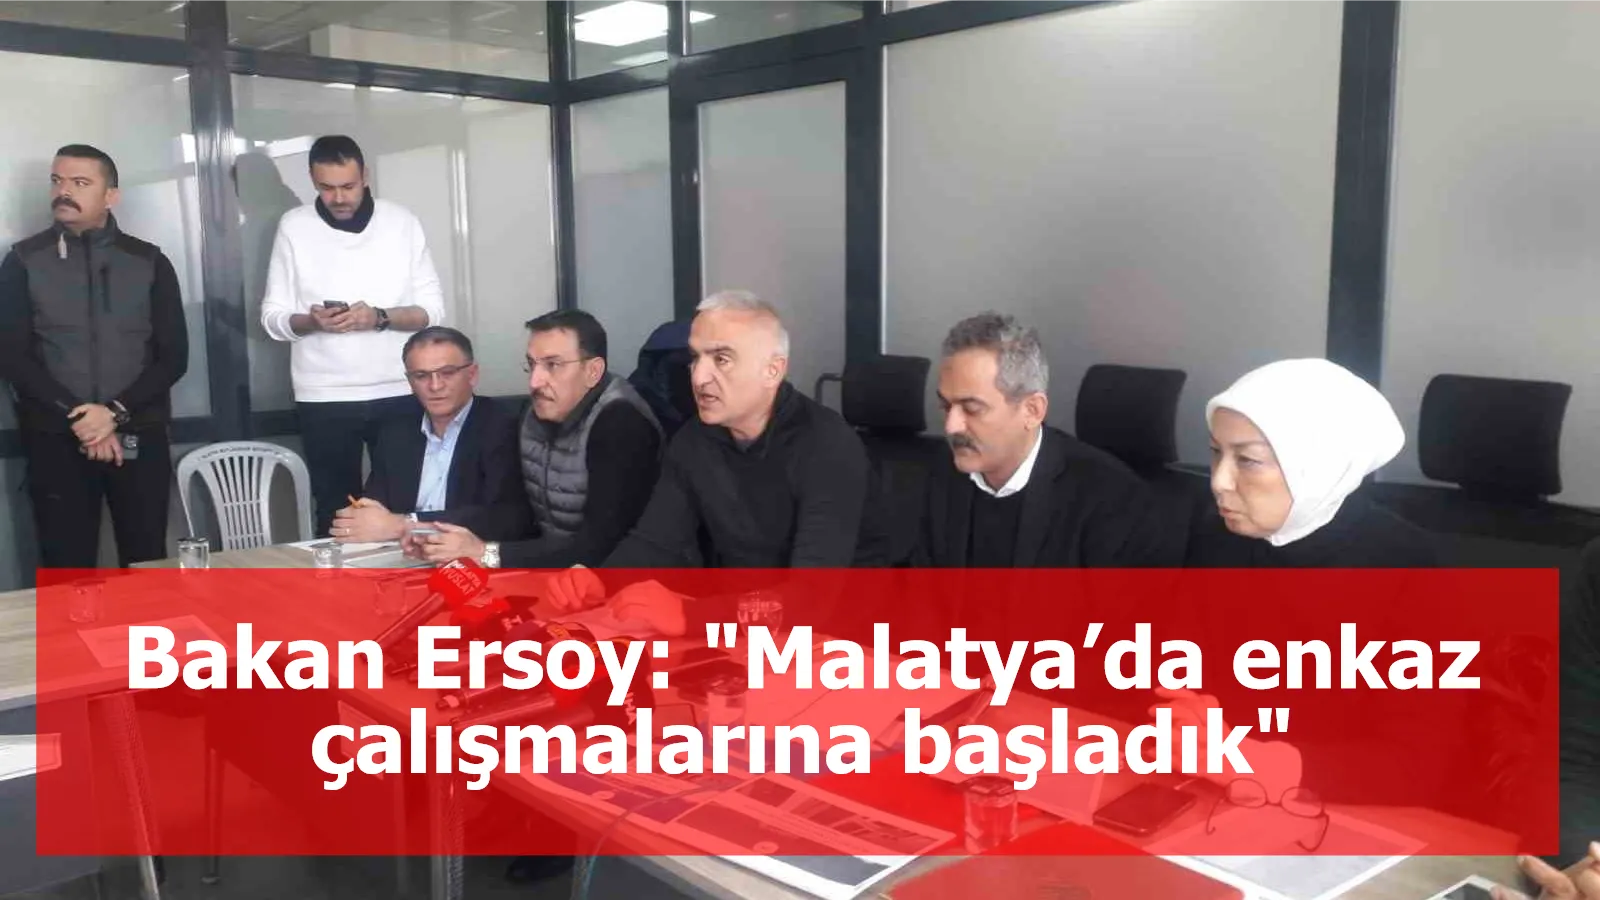 Bakan Ersoy: "Malatya’da enkaz çalışmalarına başladık"